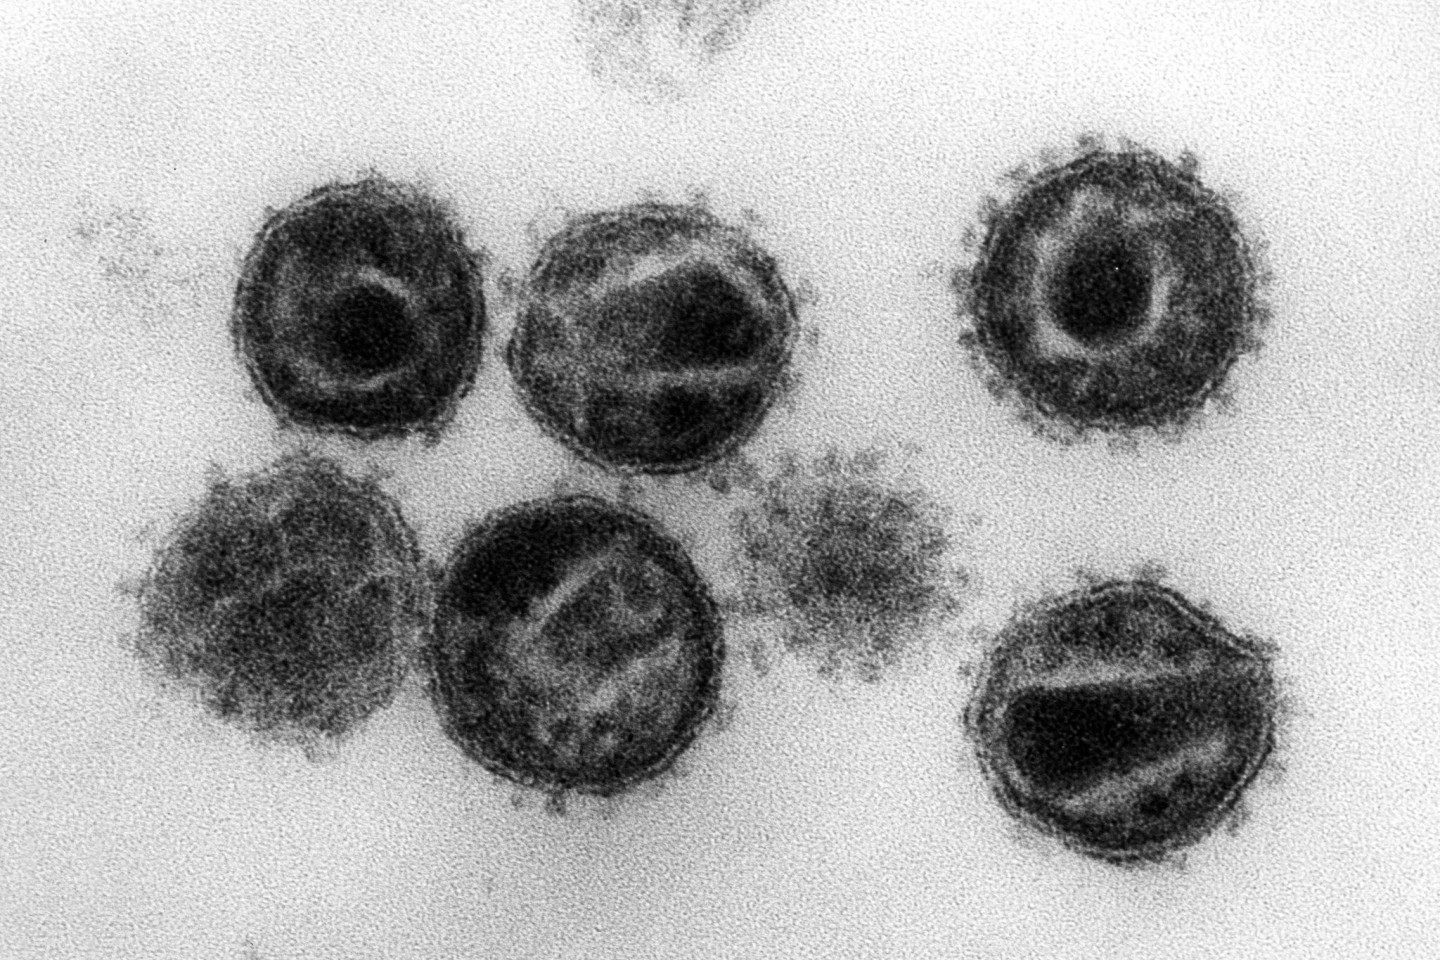 Elektronenmikroskopische Aufnahme mehrerer HIV (Humane Immunschwäche-Viren) Erreger der Immunschwäche-Krankheit Aids.